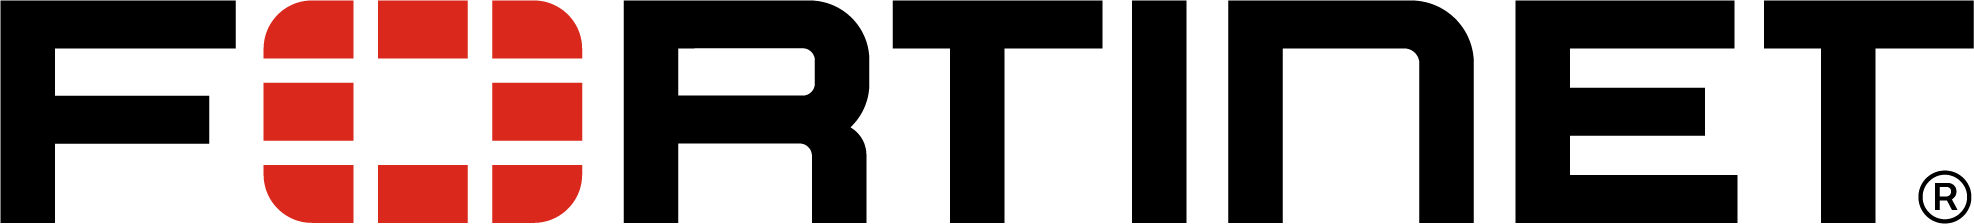 Logotipo da Fortinet